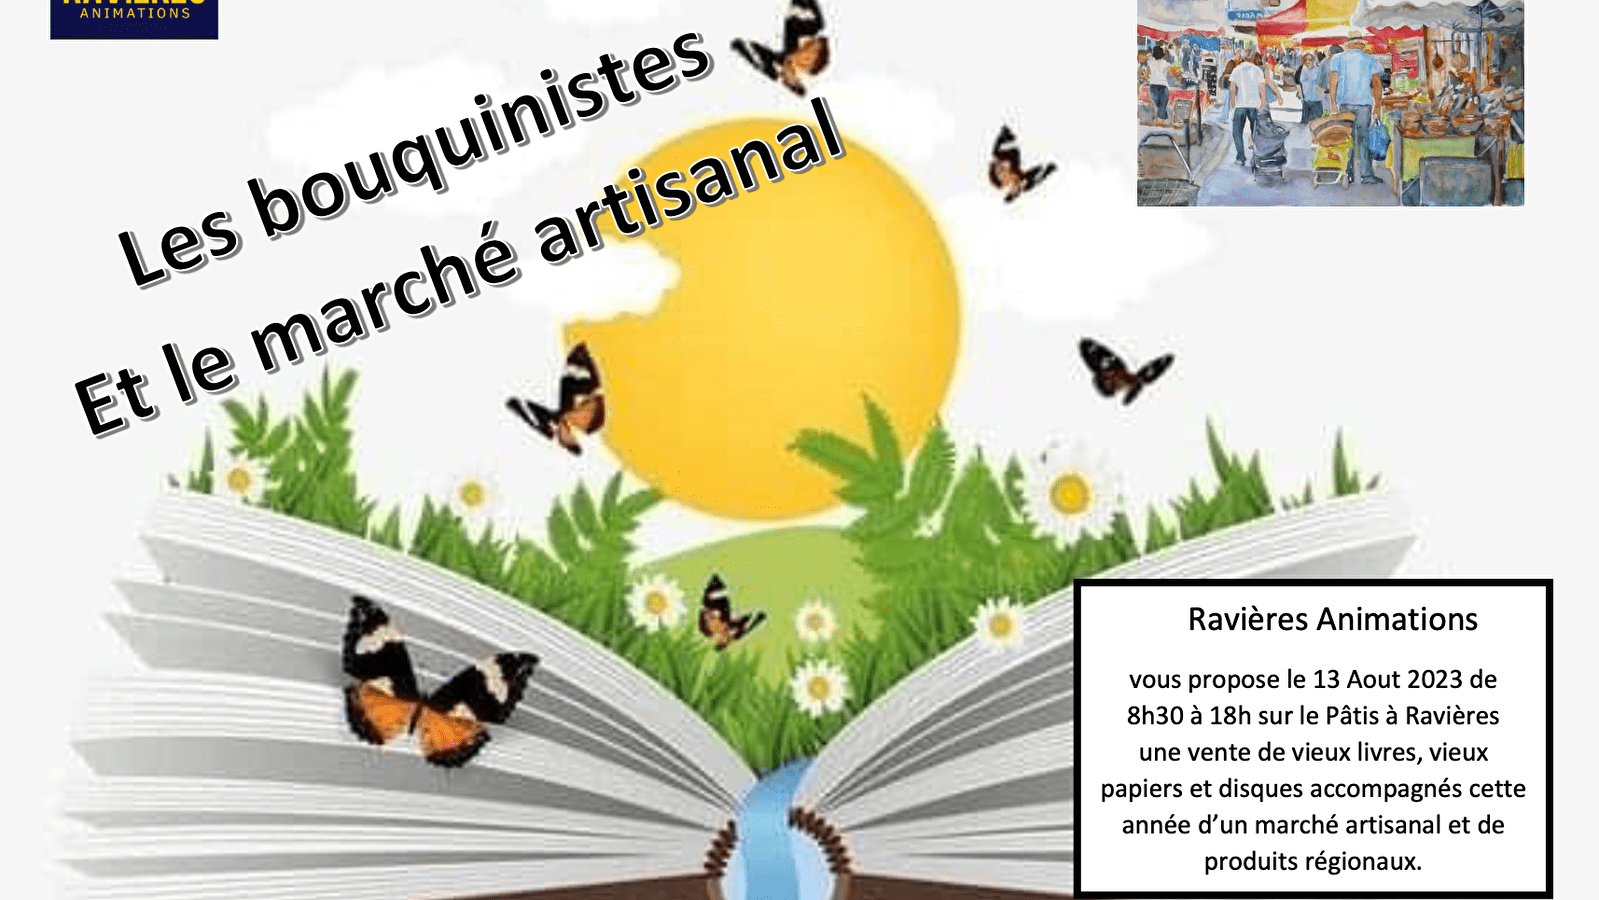 Les Bouquinistes et le Marché Artisanal - Ravières